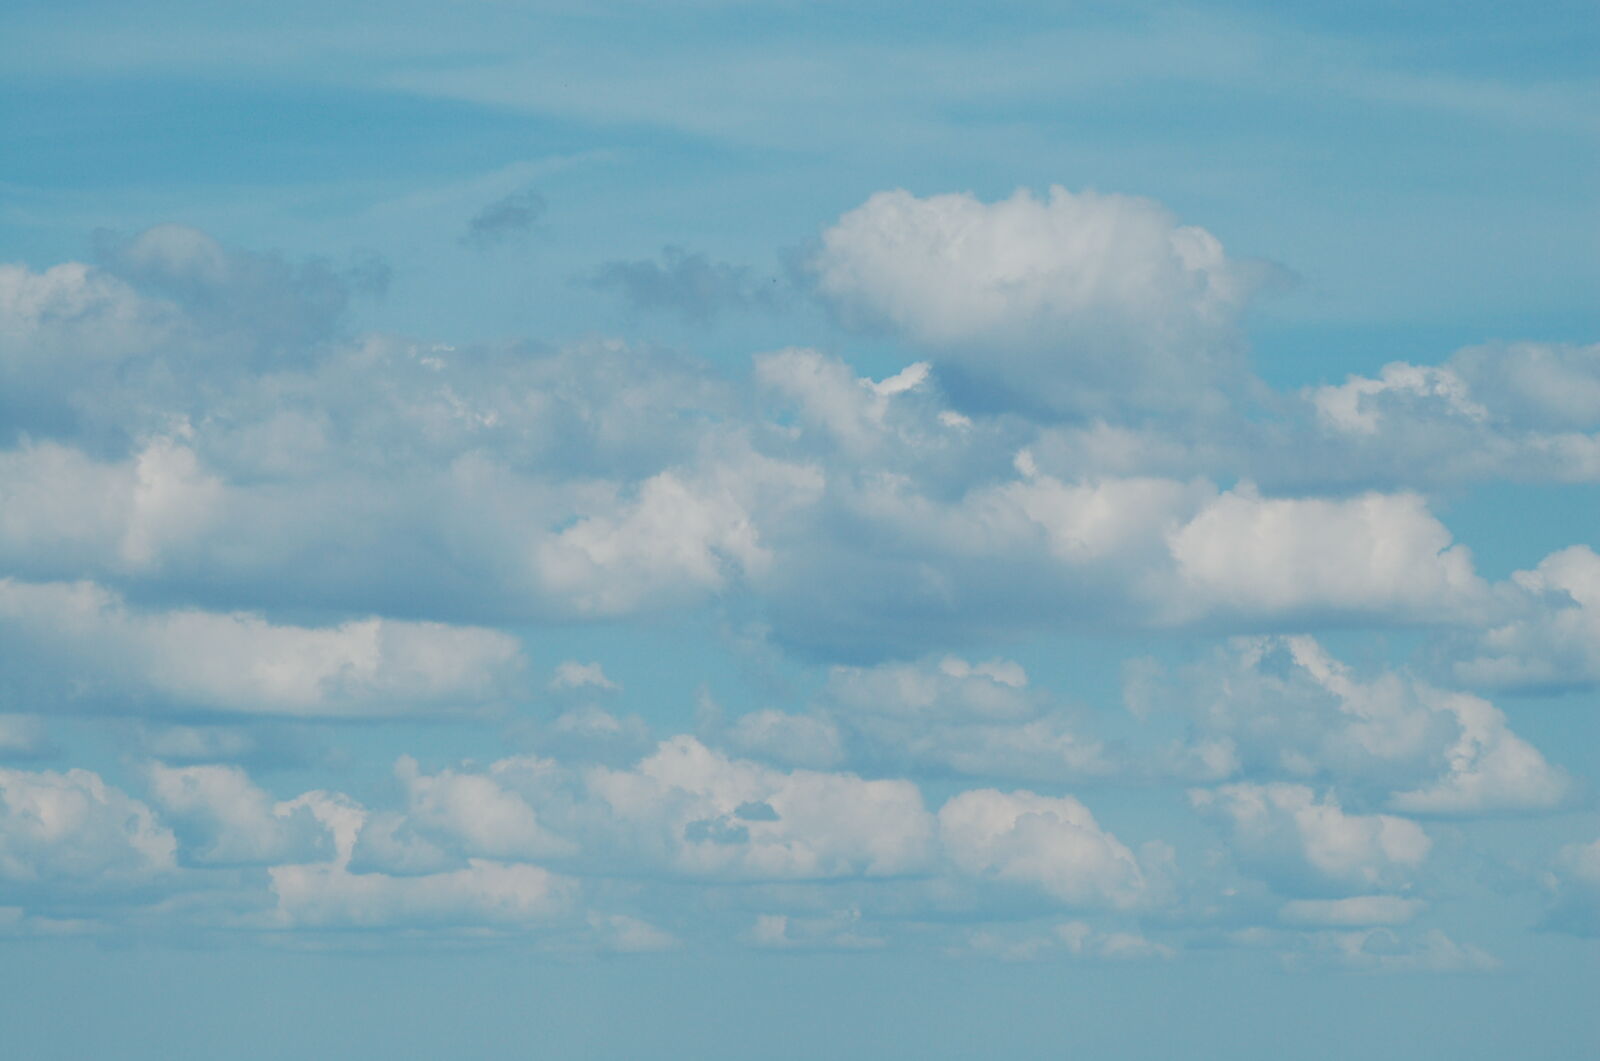 Nikon AF Nikkor 70-300mm F4-5.6G sample photo. Blue, cloud, cumulus photography